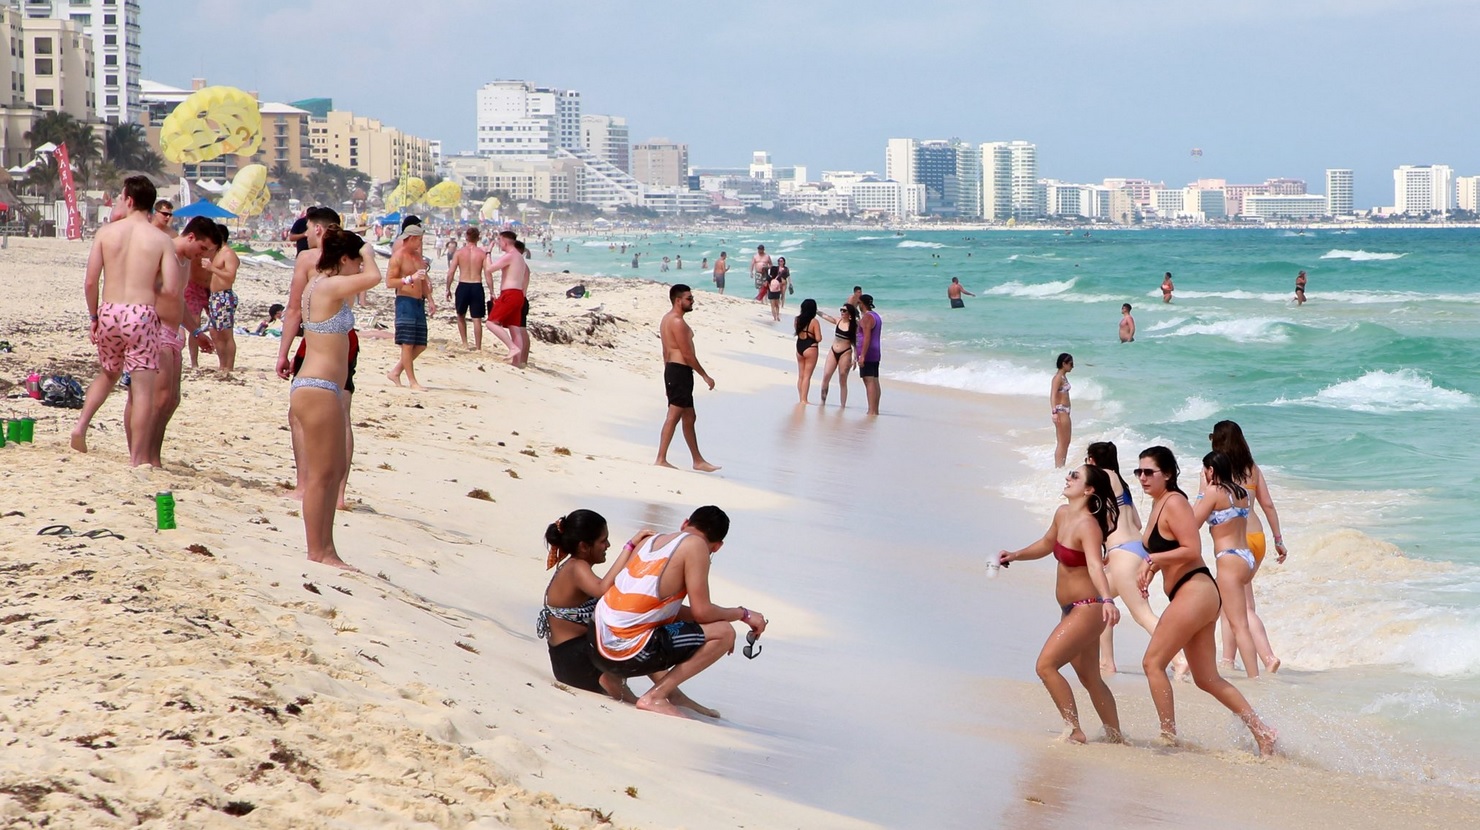 Foto: Turistas en playas de Cancún, Quintana Roo, 19 de marzo 2019. Twitter @AytoCancun